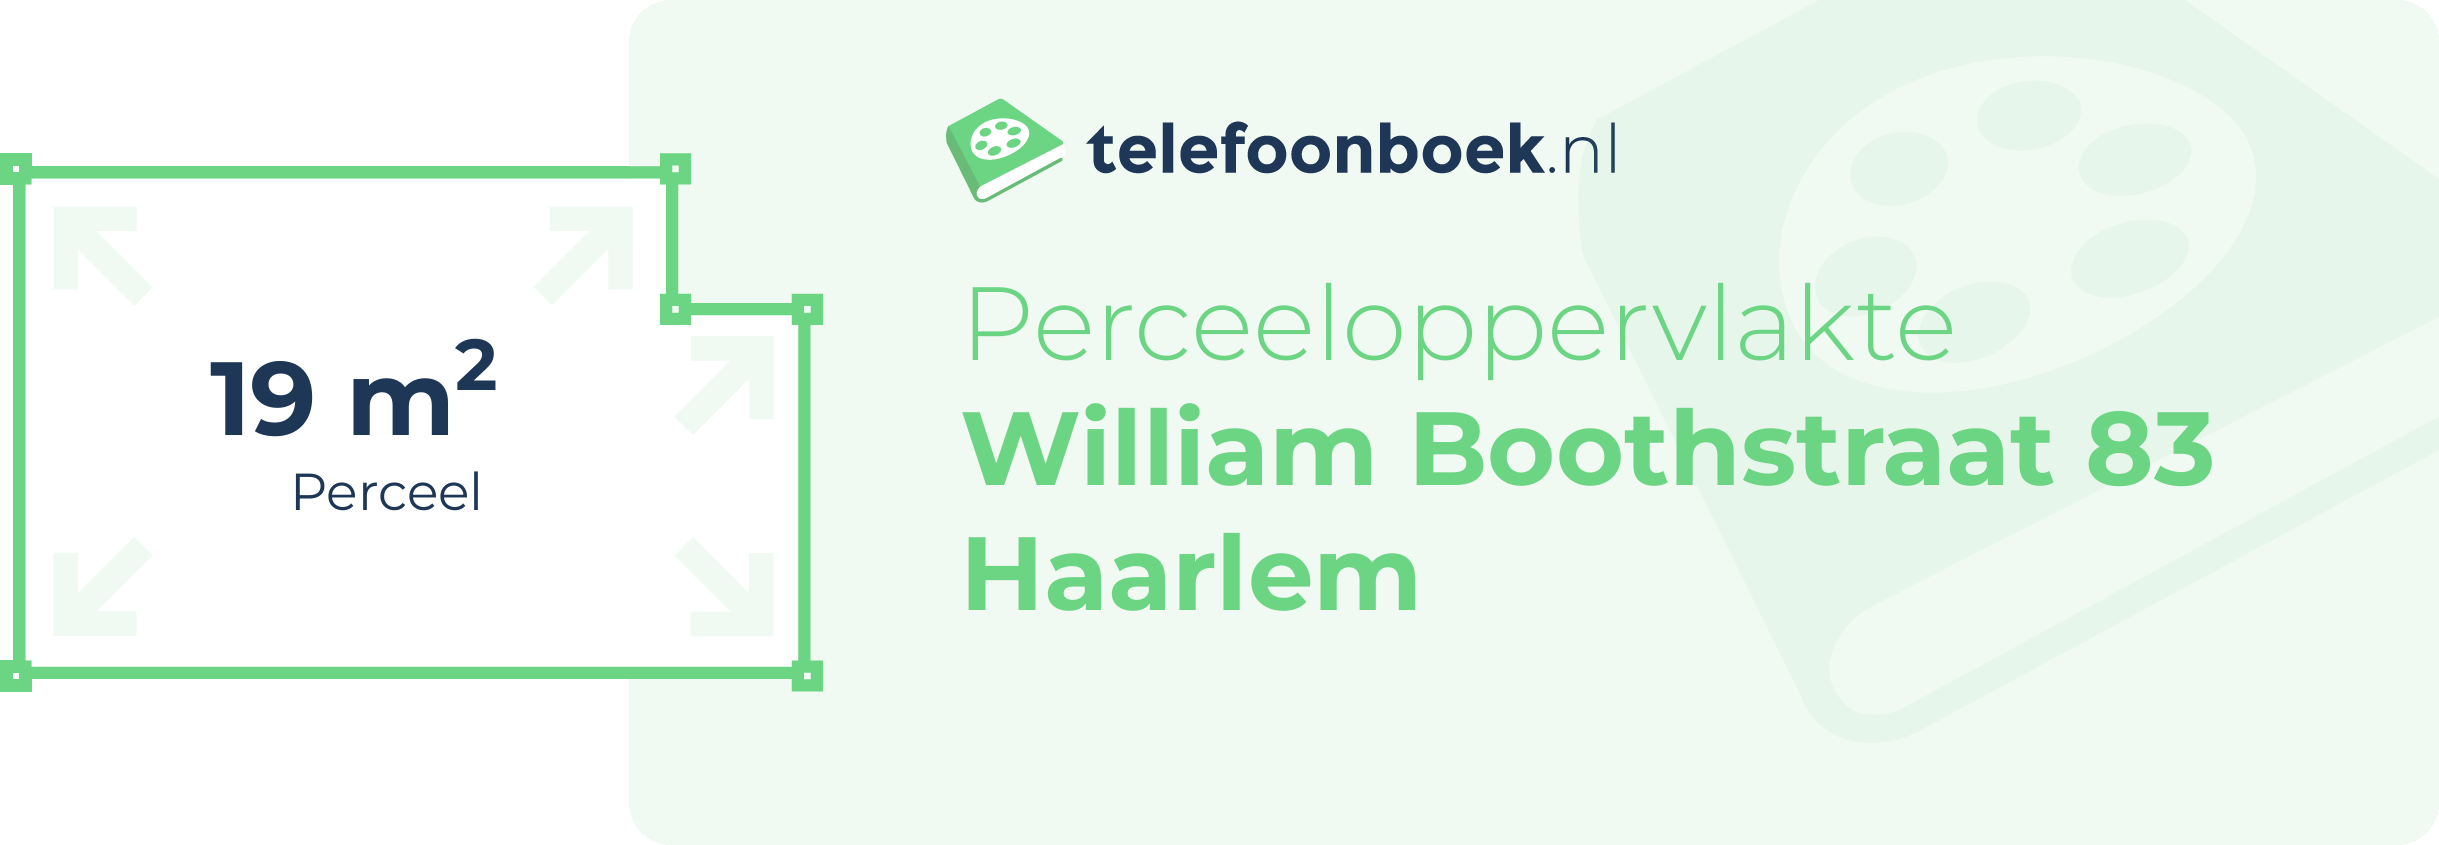 Perceeloppervlakte William Boothstraat 83 Haarlem